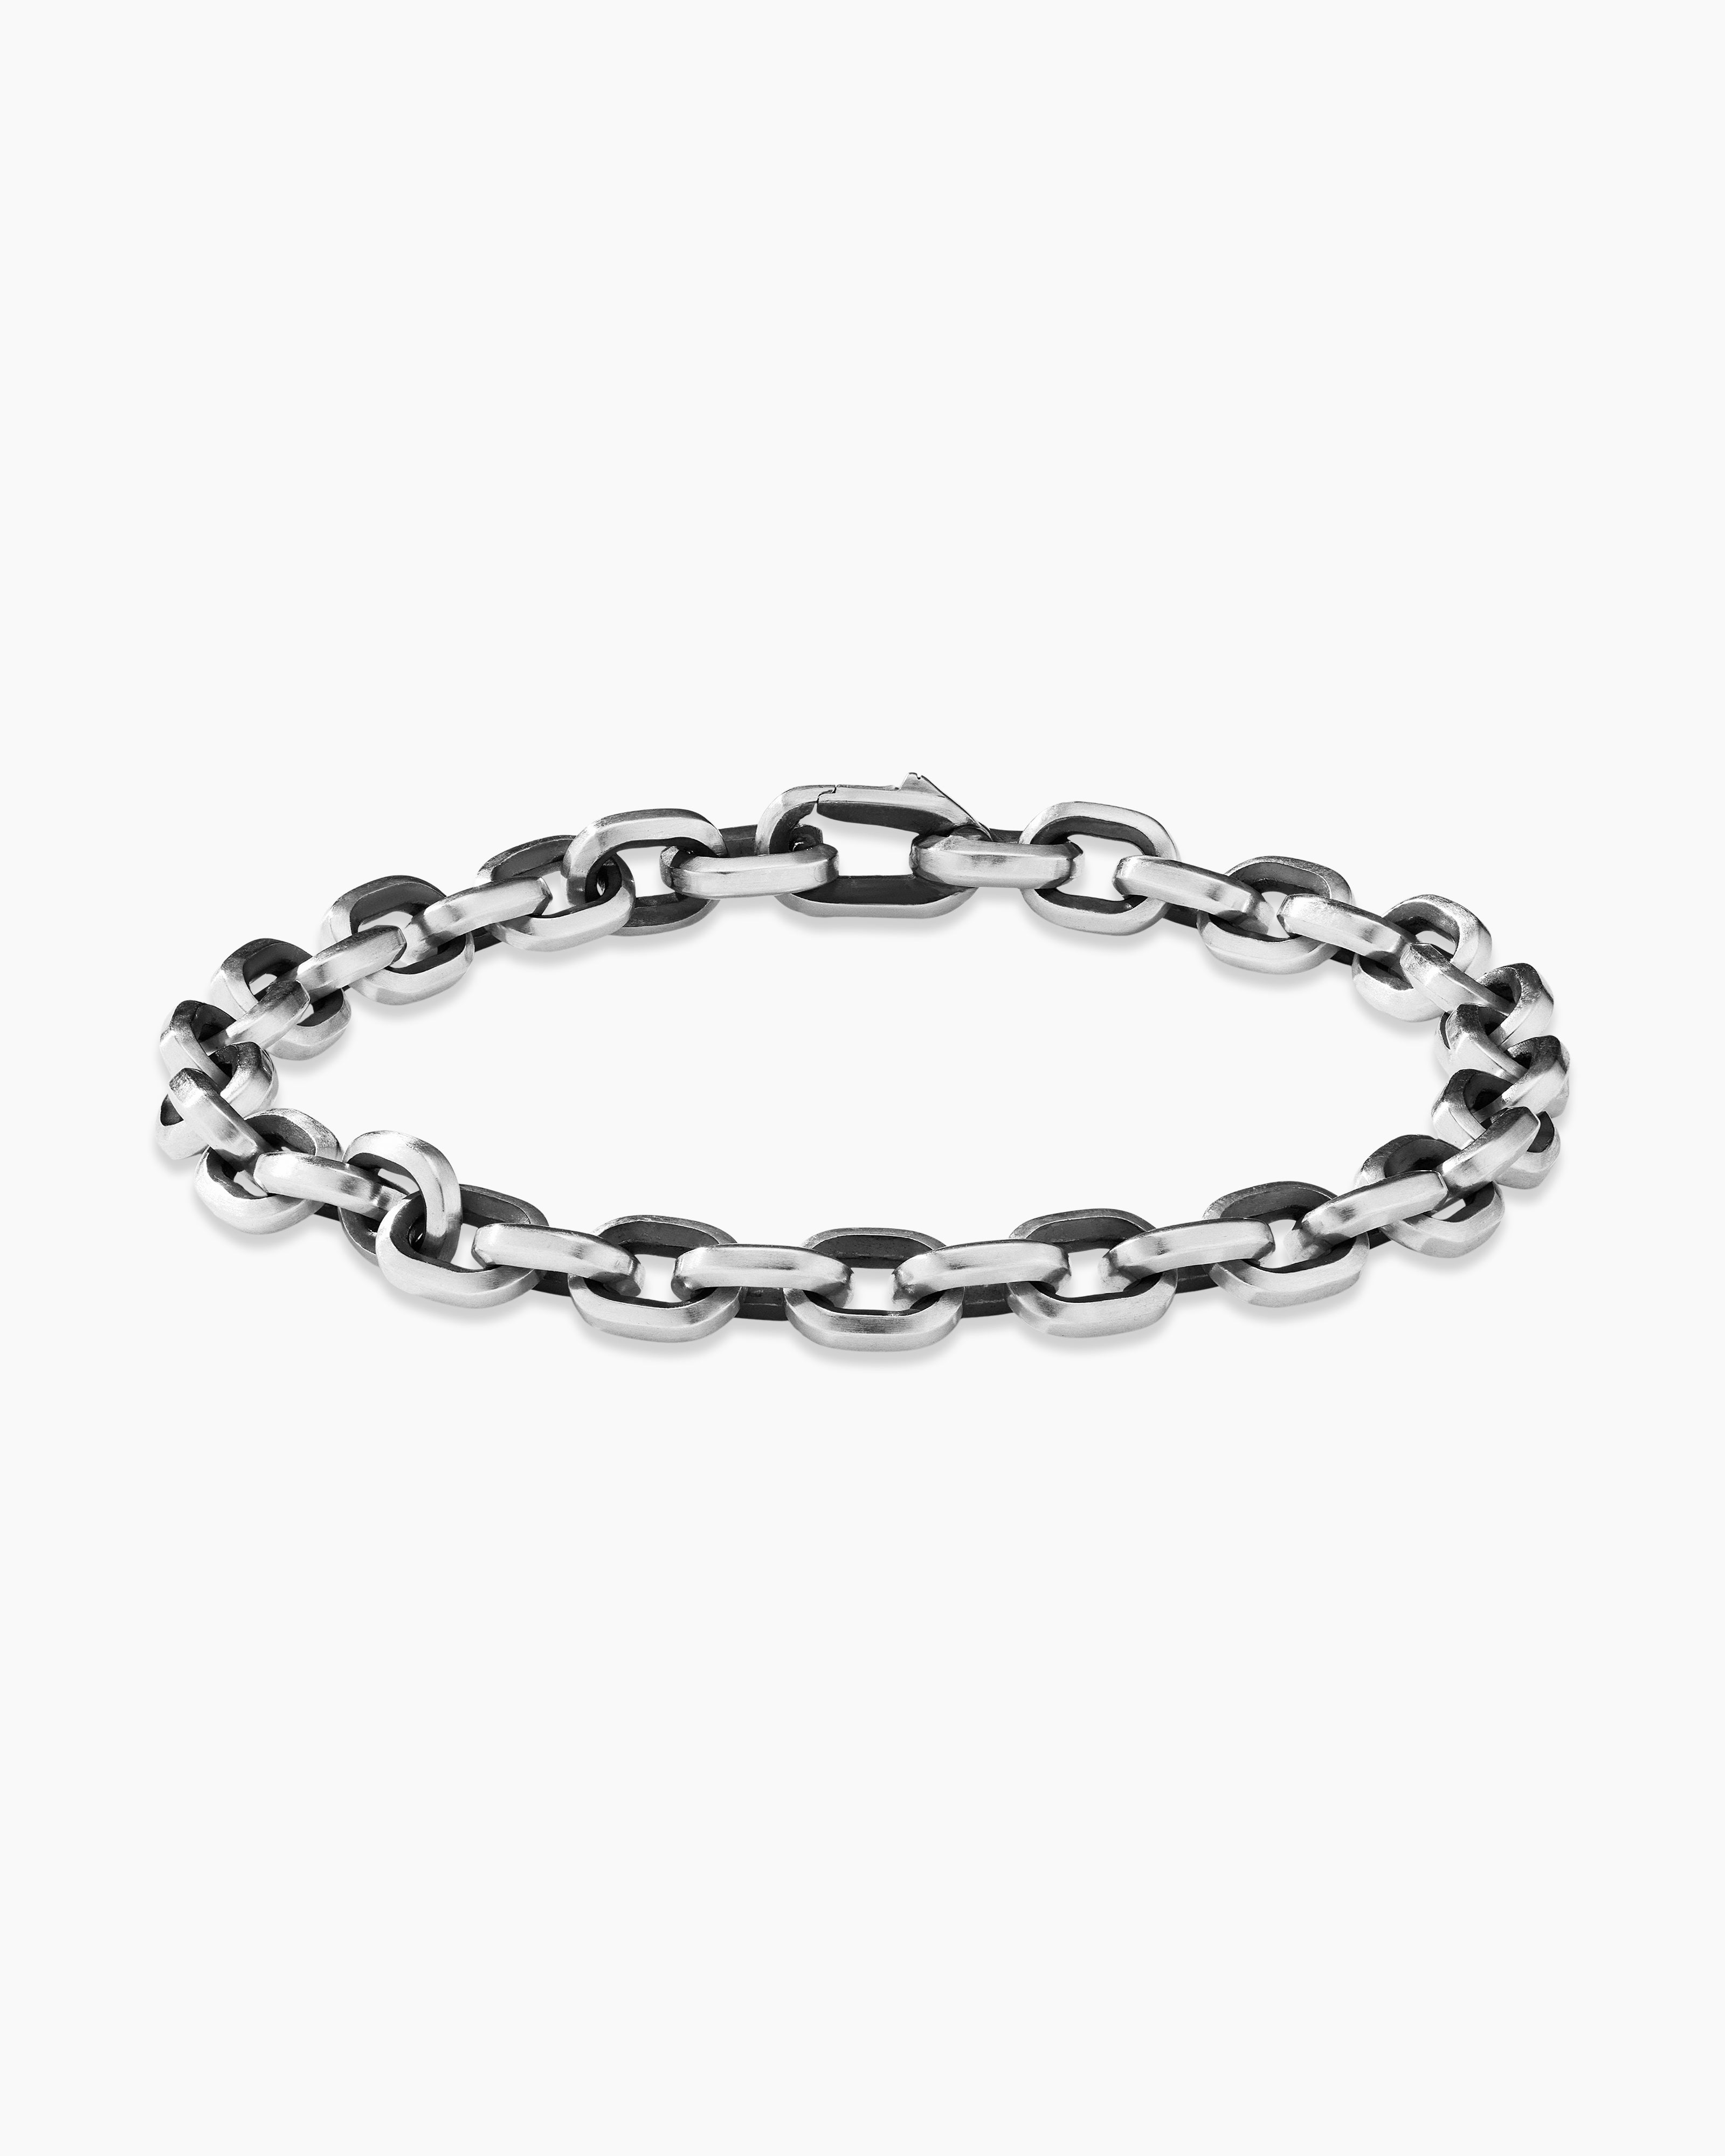 DAVID YURMAN Deco Chain Link Bracelet In Sterling Silver